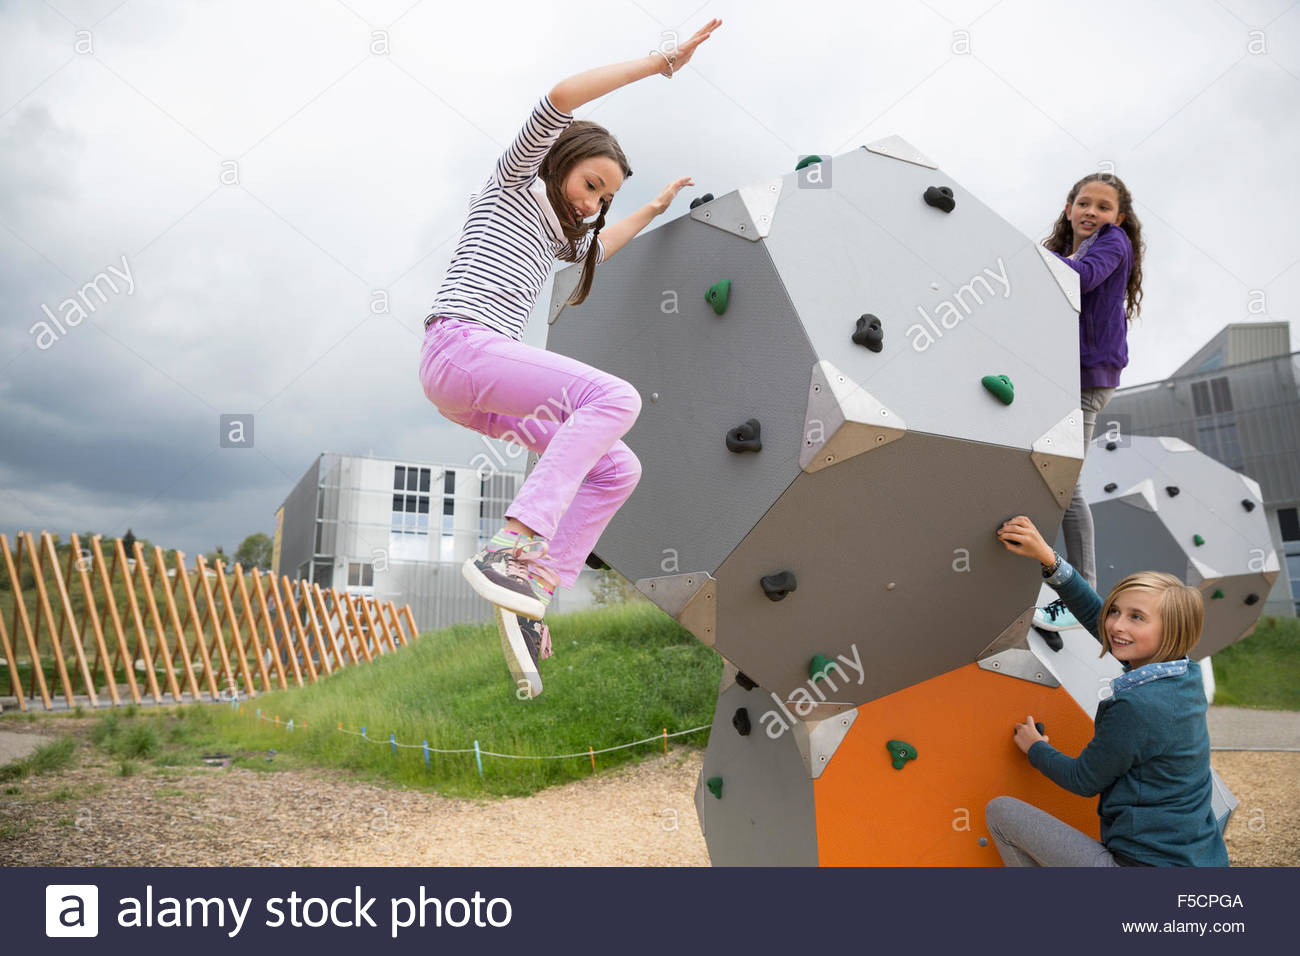 Chica saltando de forma geométrica en playground Foto de stock